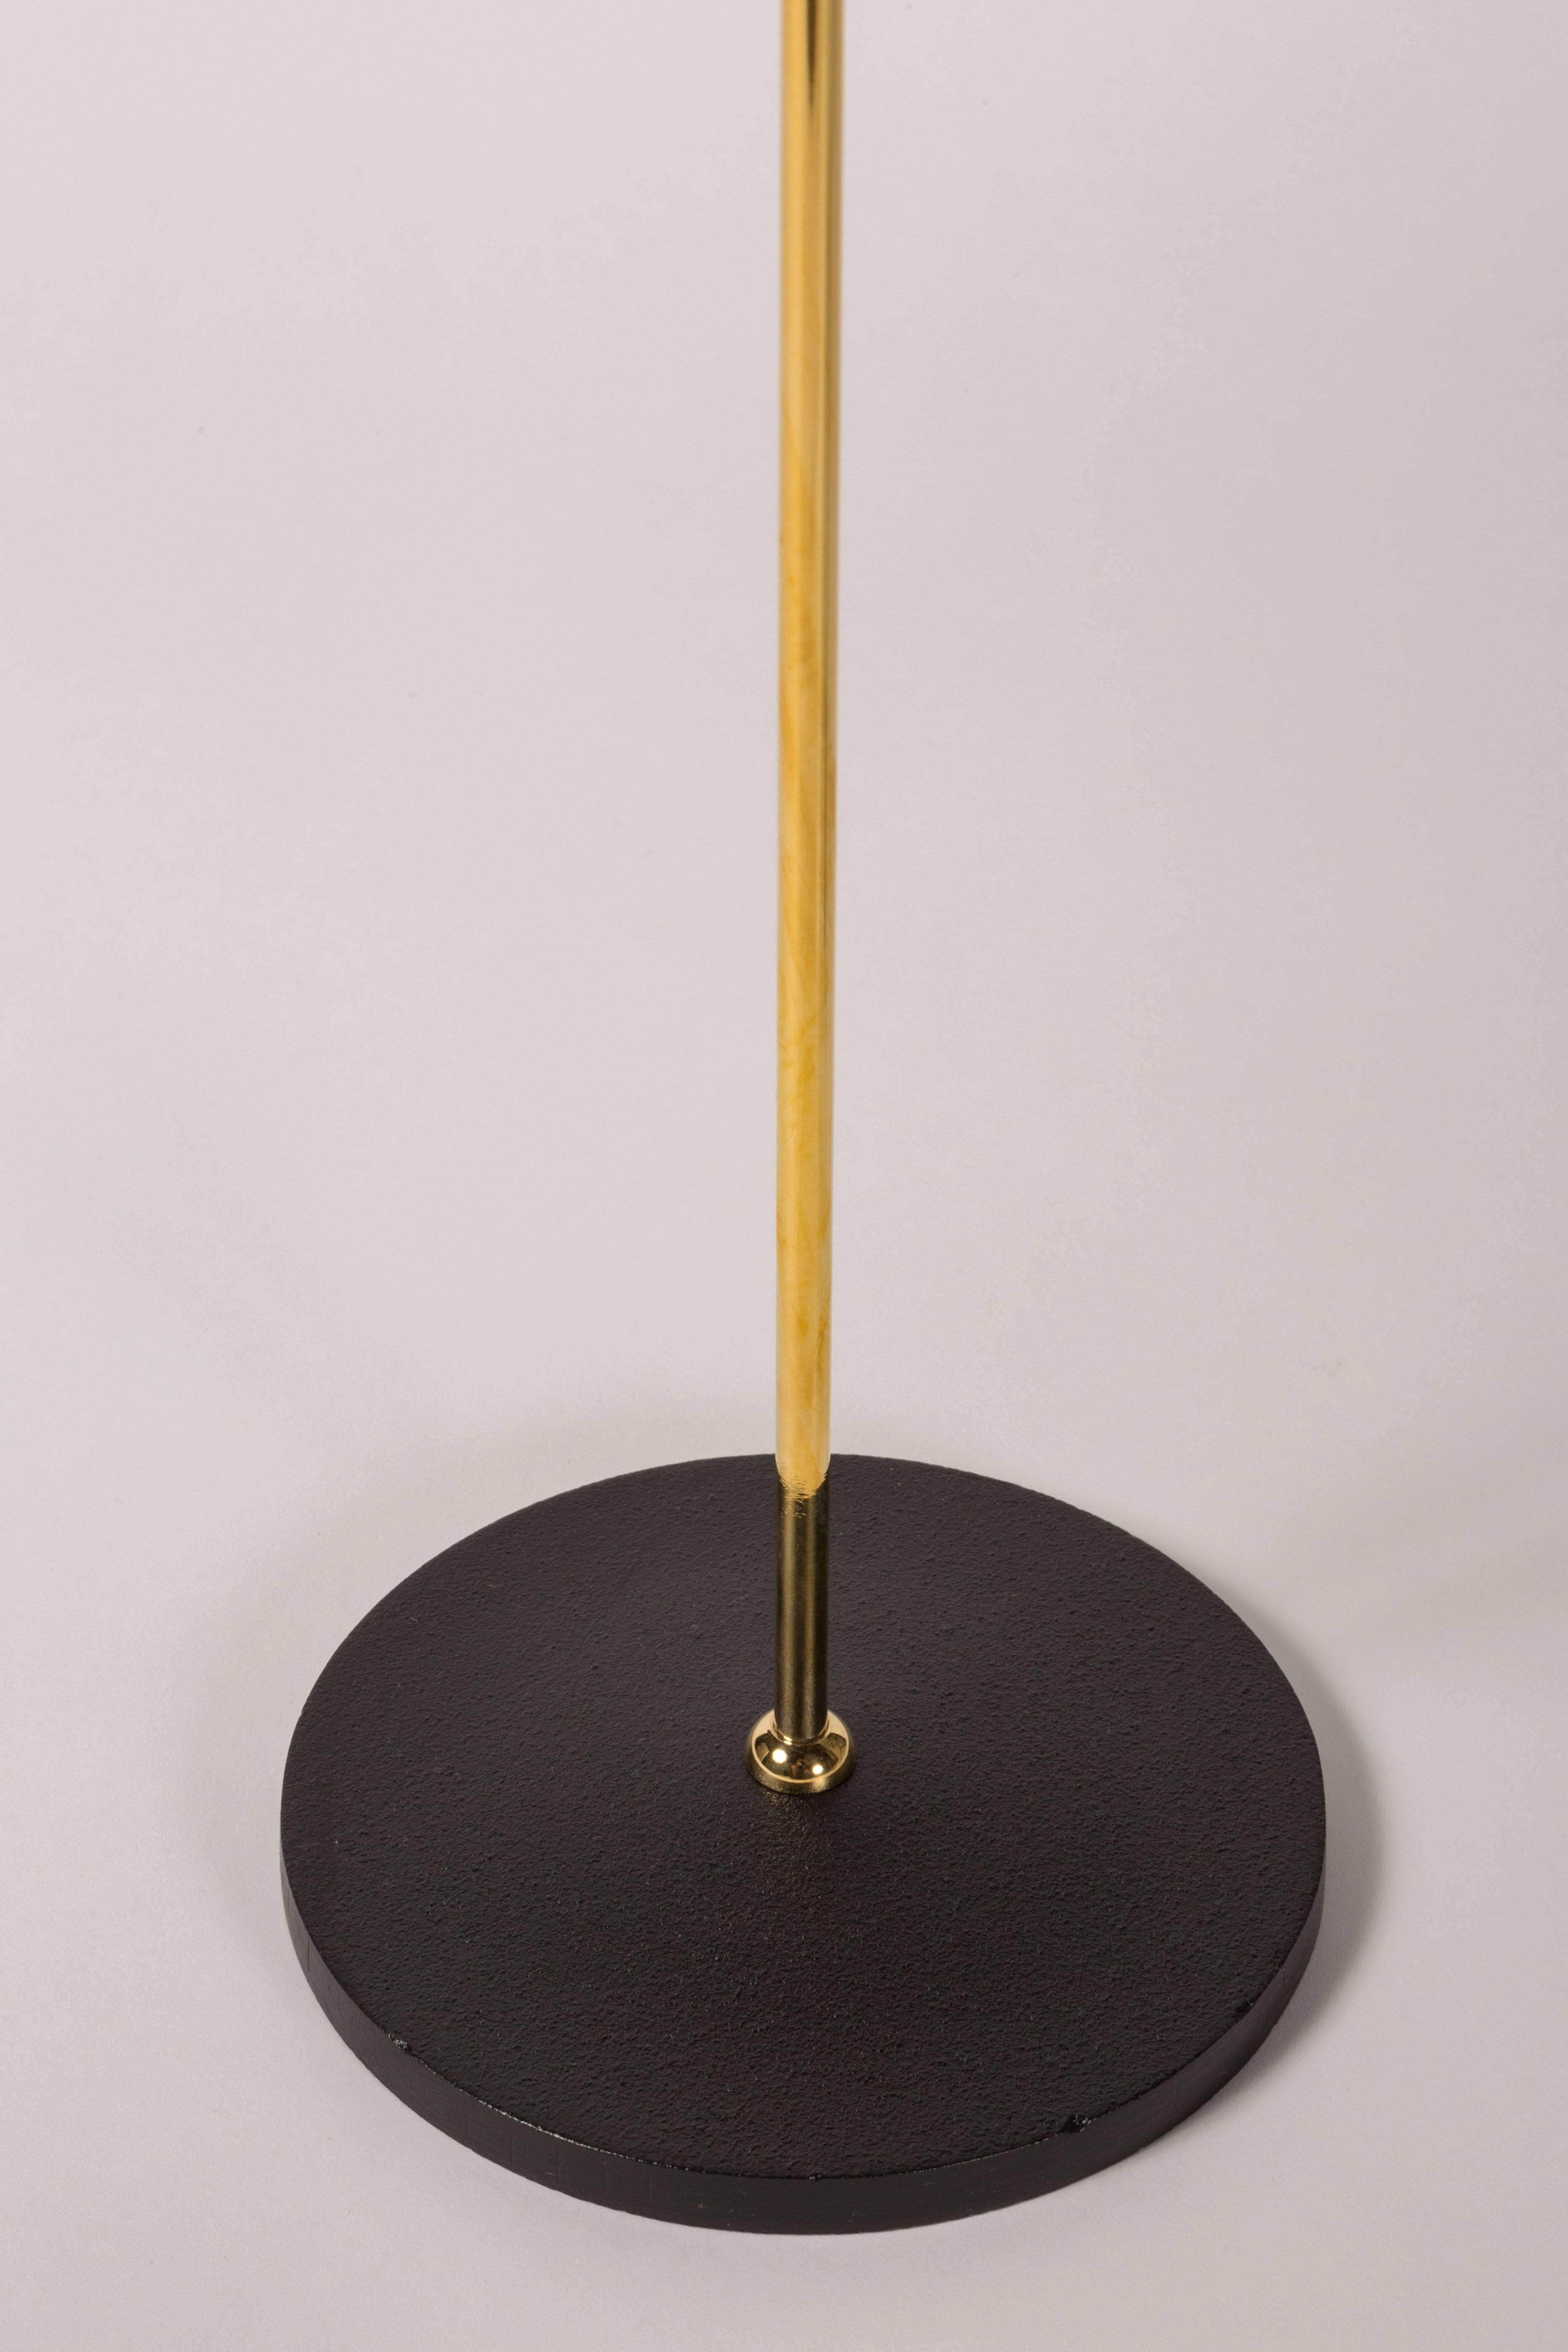 Brass Monachella Floor Lamp by Luigi Caccia Dominioni